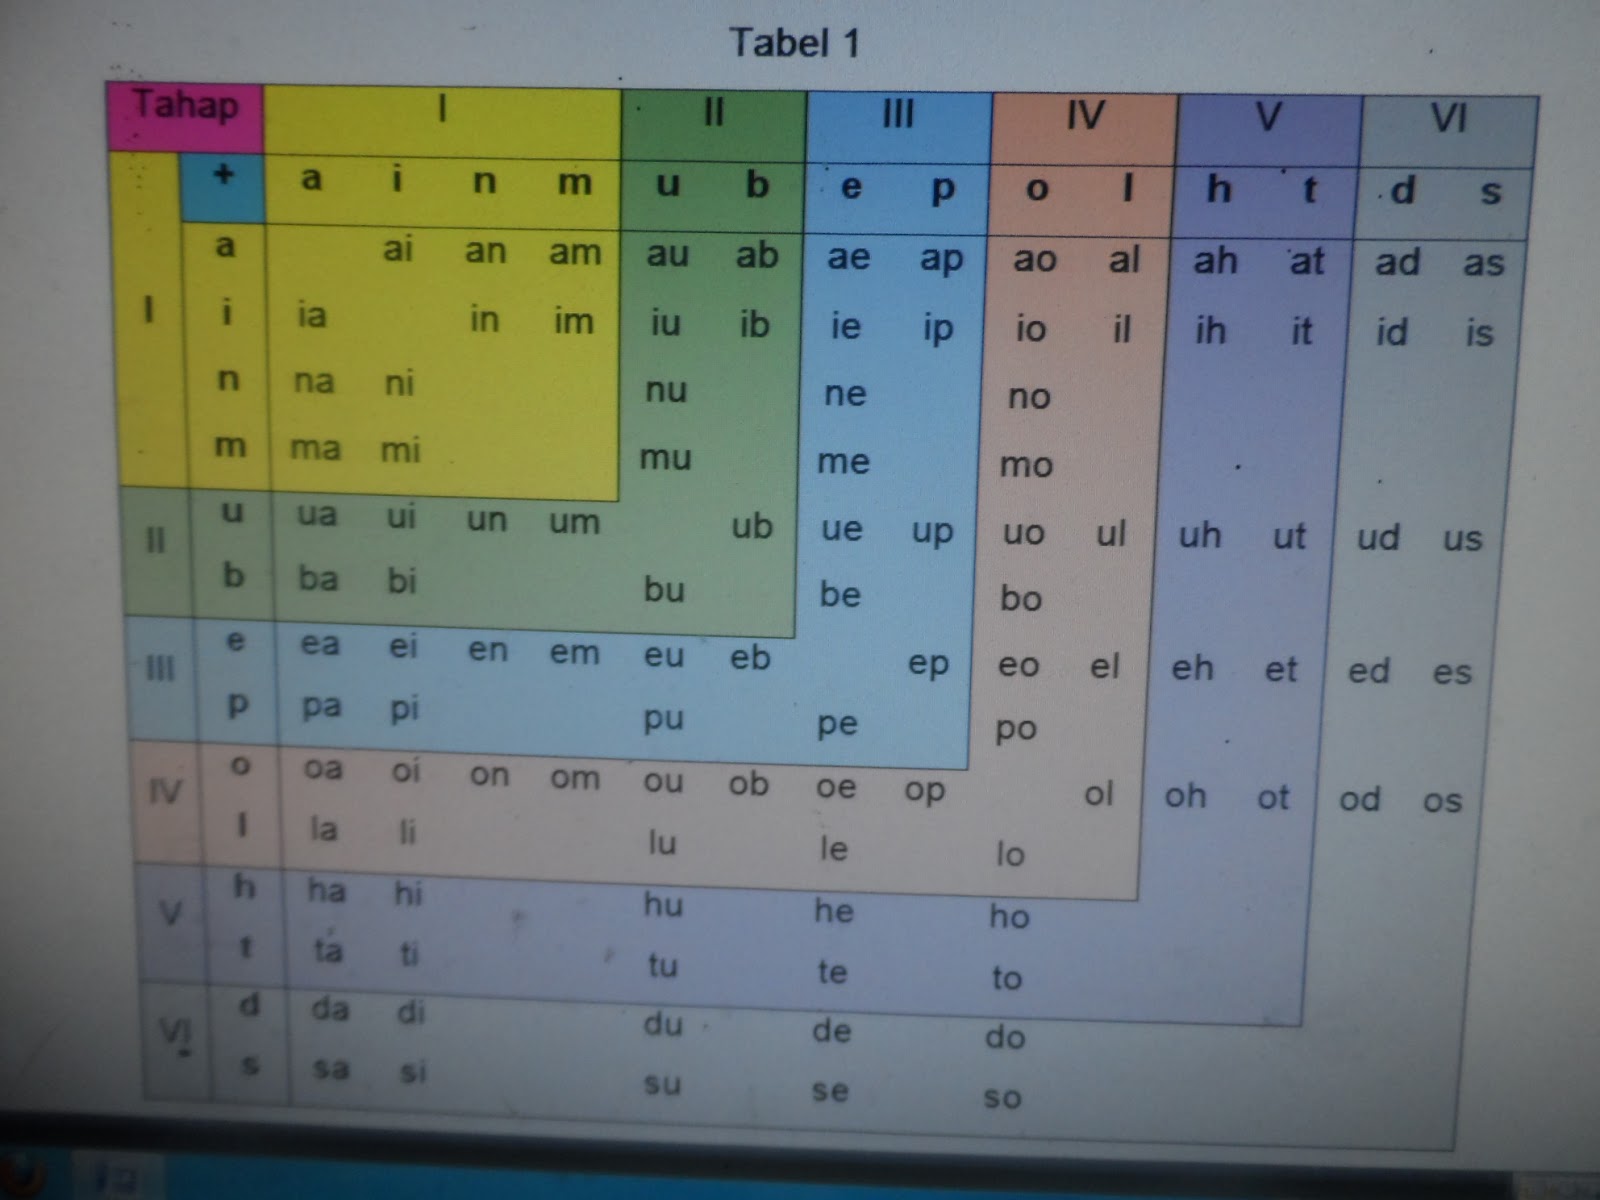 Pada tabel 1 di atas rangkaian huruf fonem bagian tahap I sampai tahap IV merupakan kelompok huruf fonem yang rangkaian hurufnya fonemnya saling terkait